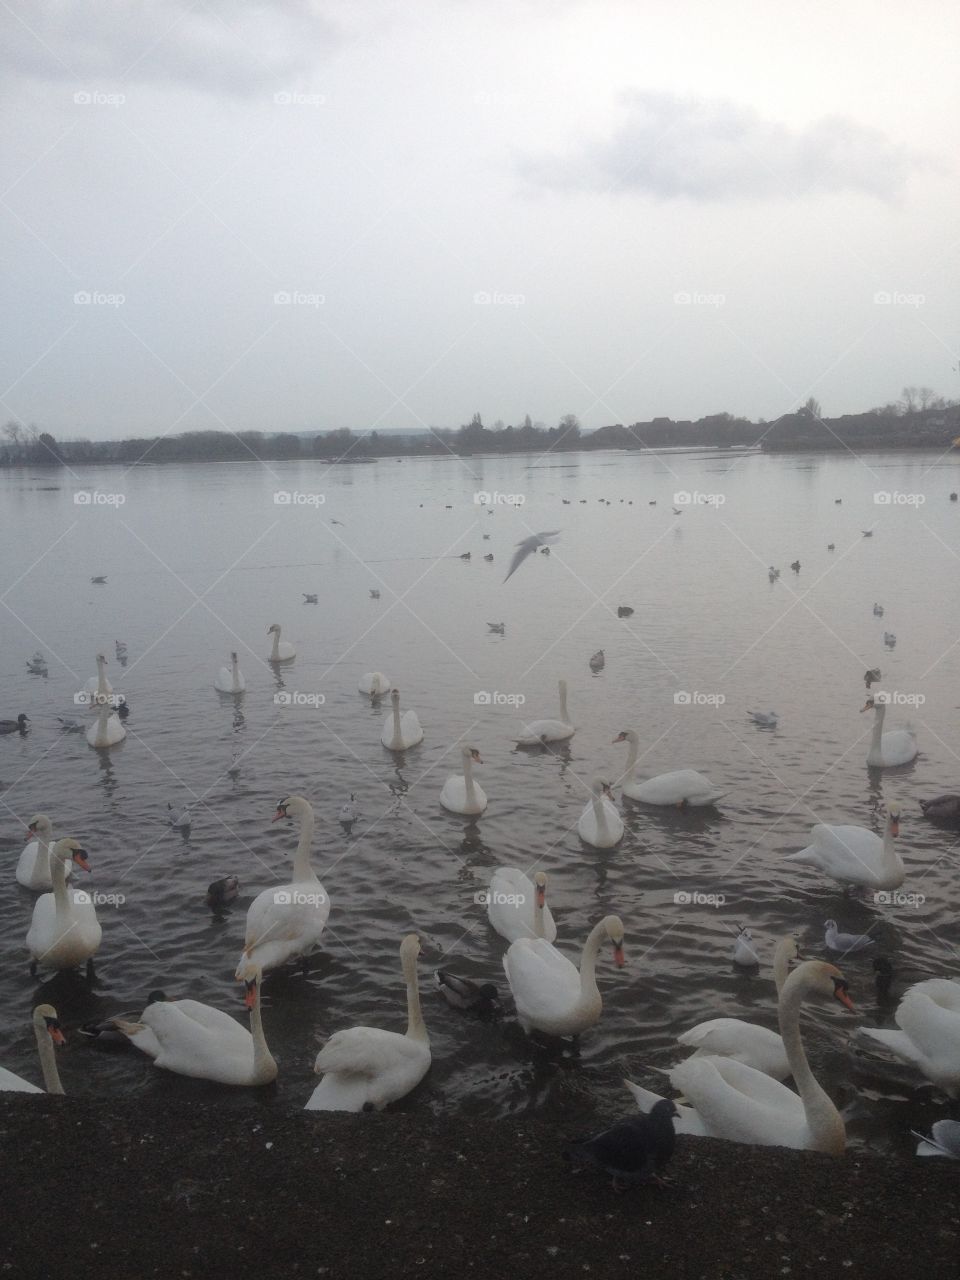 Feeding swans